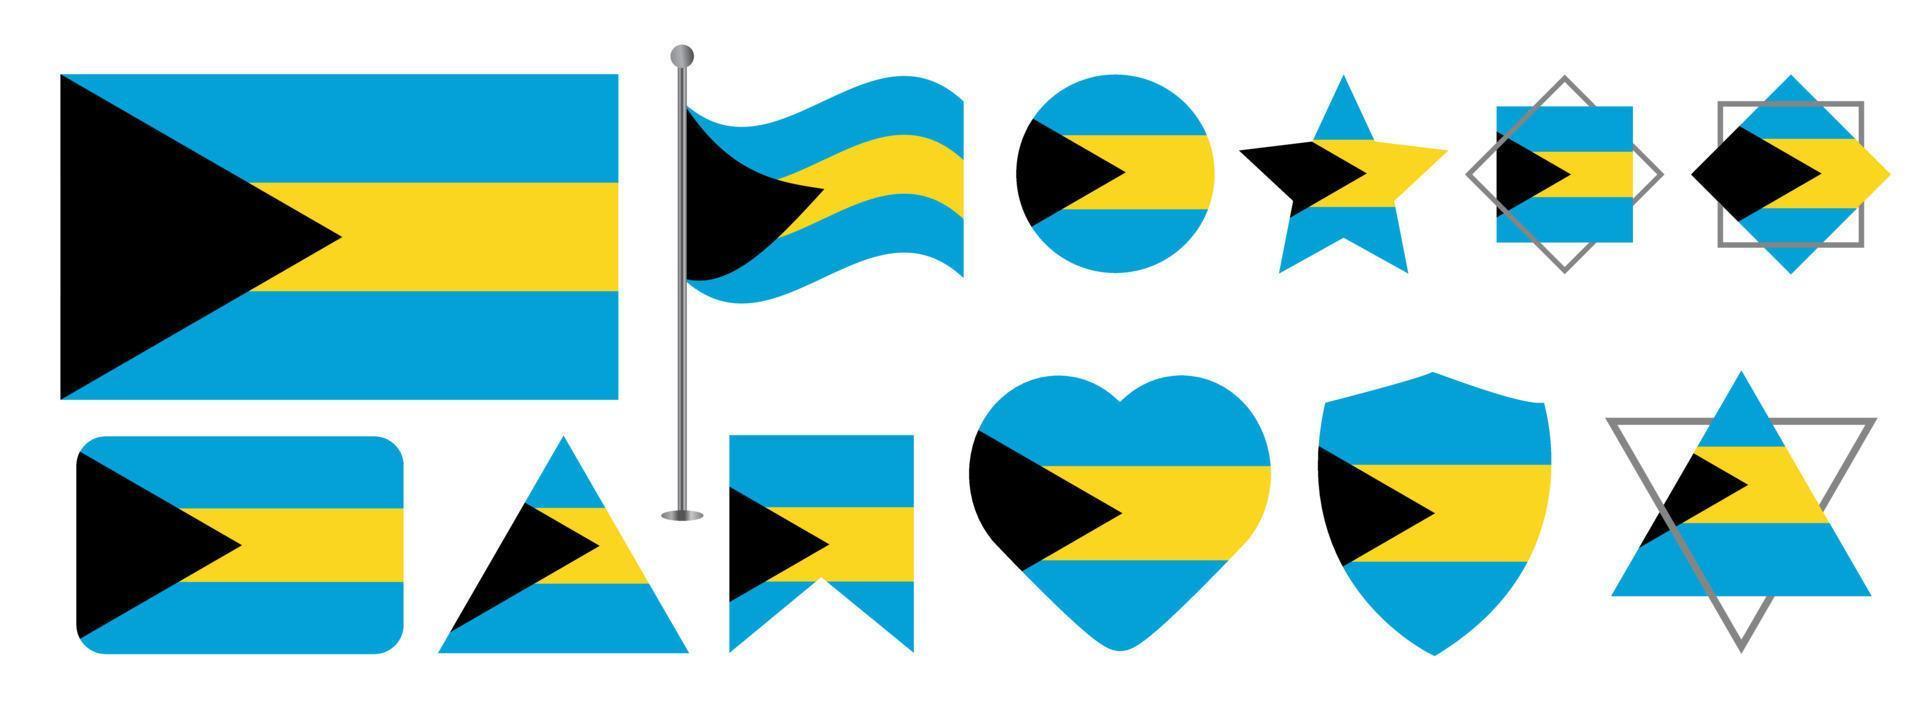 conception du drapeau des bahamas. ensemble de motifs vectoriels du drapeau national des bahamas. drapeau des bahamas illustration vectorielle vecteur